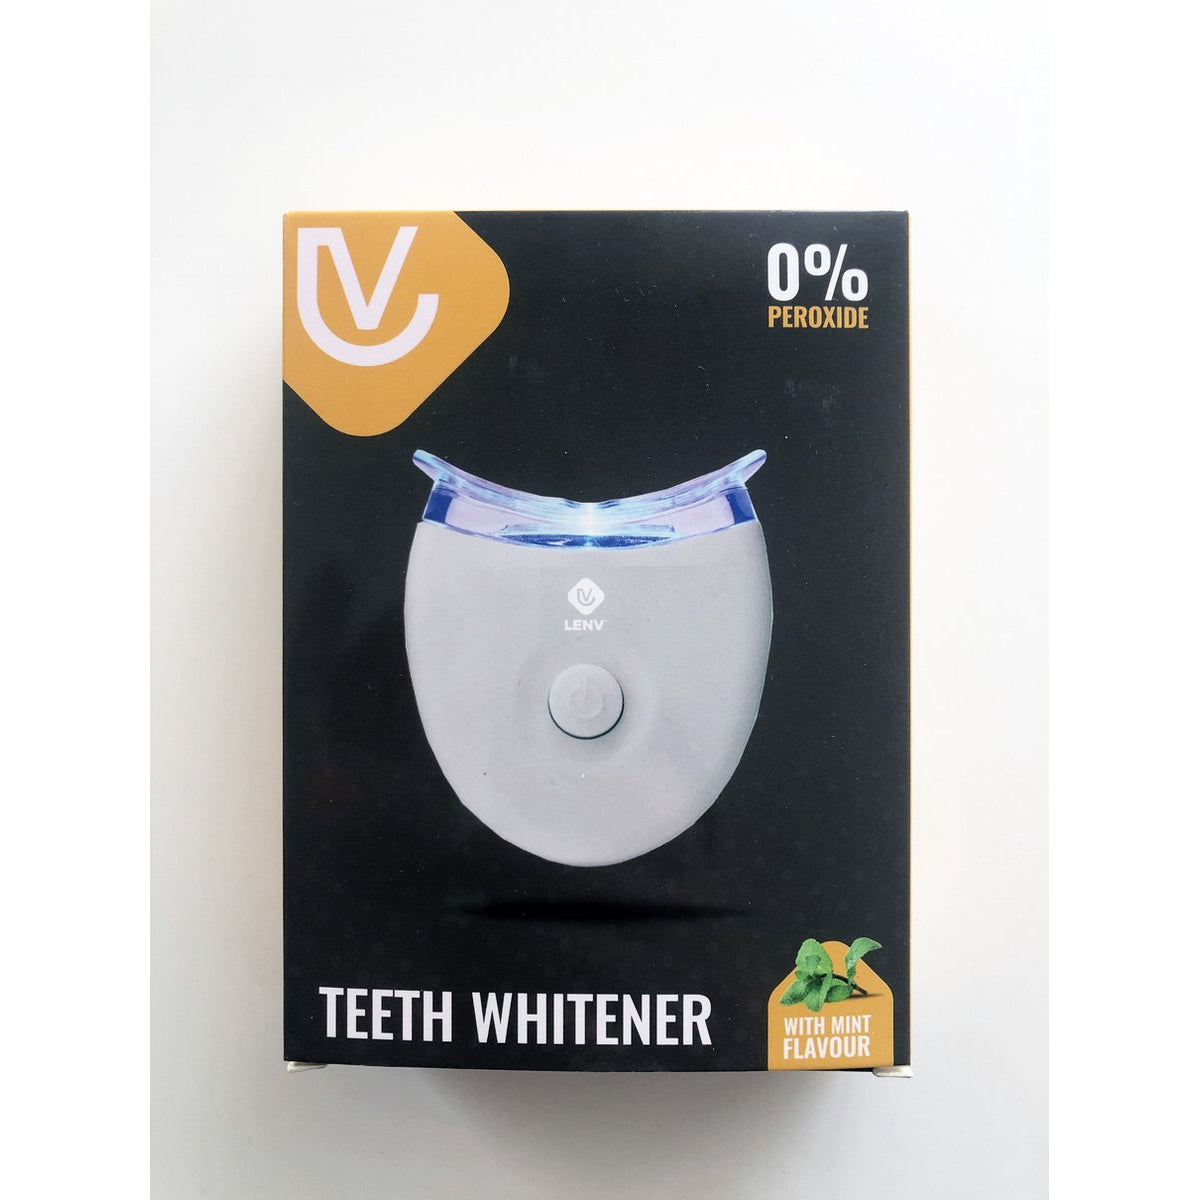 Nixnix - Tanden Bleken - Tandbleek Set - Tandenbleekset - Tandbleekset Premium - Tanden Bleekset - Tandbleekset Premium - 3D LED - Zonder Peroxide - 3 Gelspuiten - Veilig - Thuis bleken - Witte Tanden - Professionele Teeth Whitening - Tandenbleek set